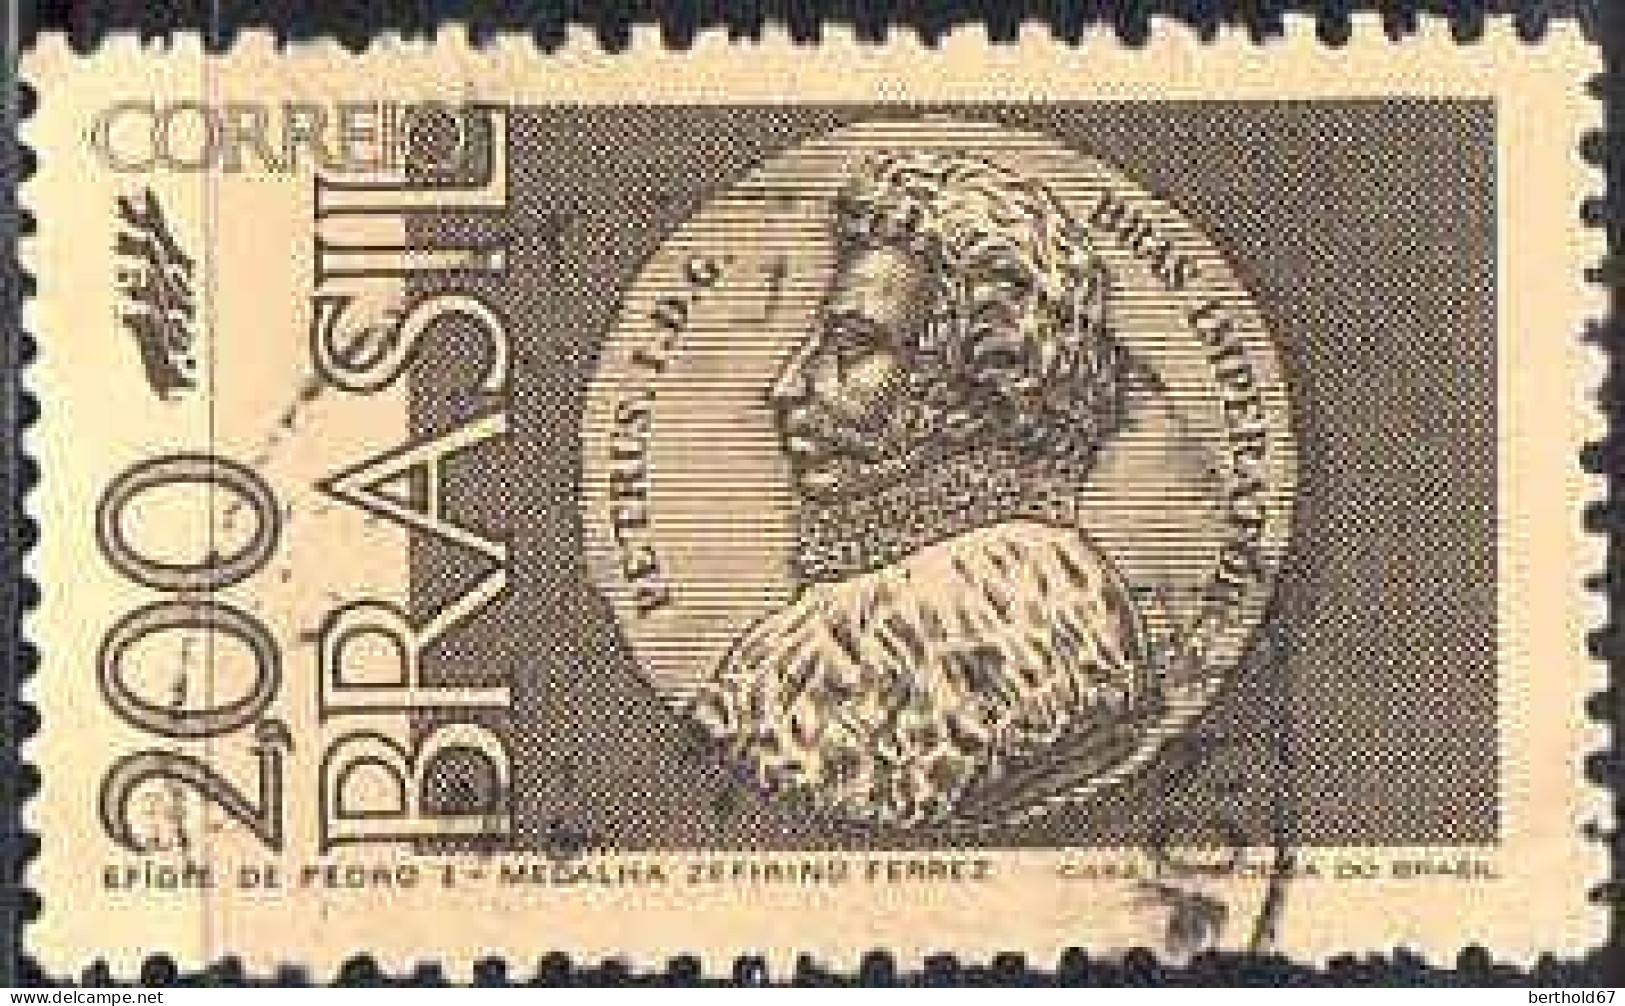 Brésil Poste Obl Yv:1010 Mi:1339 Efigie De Pedro I-Medalha Zefirino Ferrez (Beau Cachet Rond) - Oblitérés